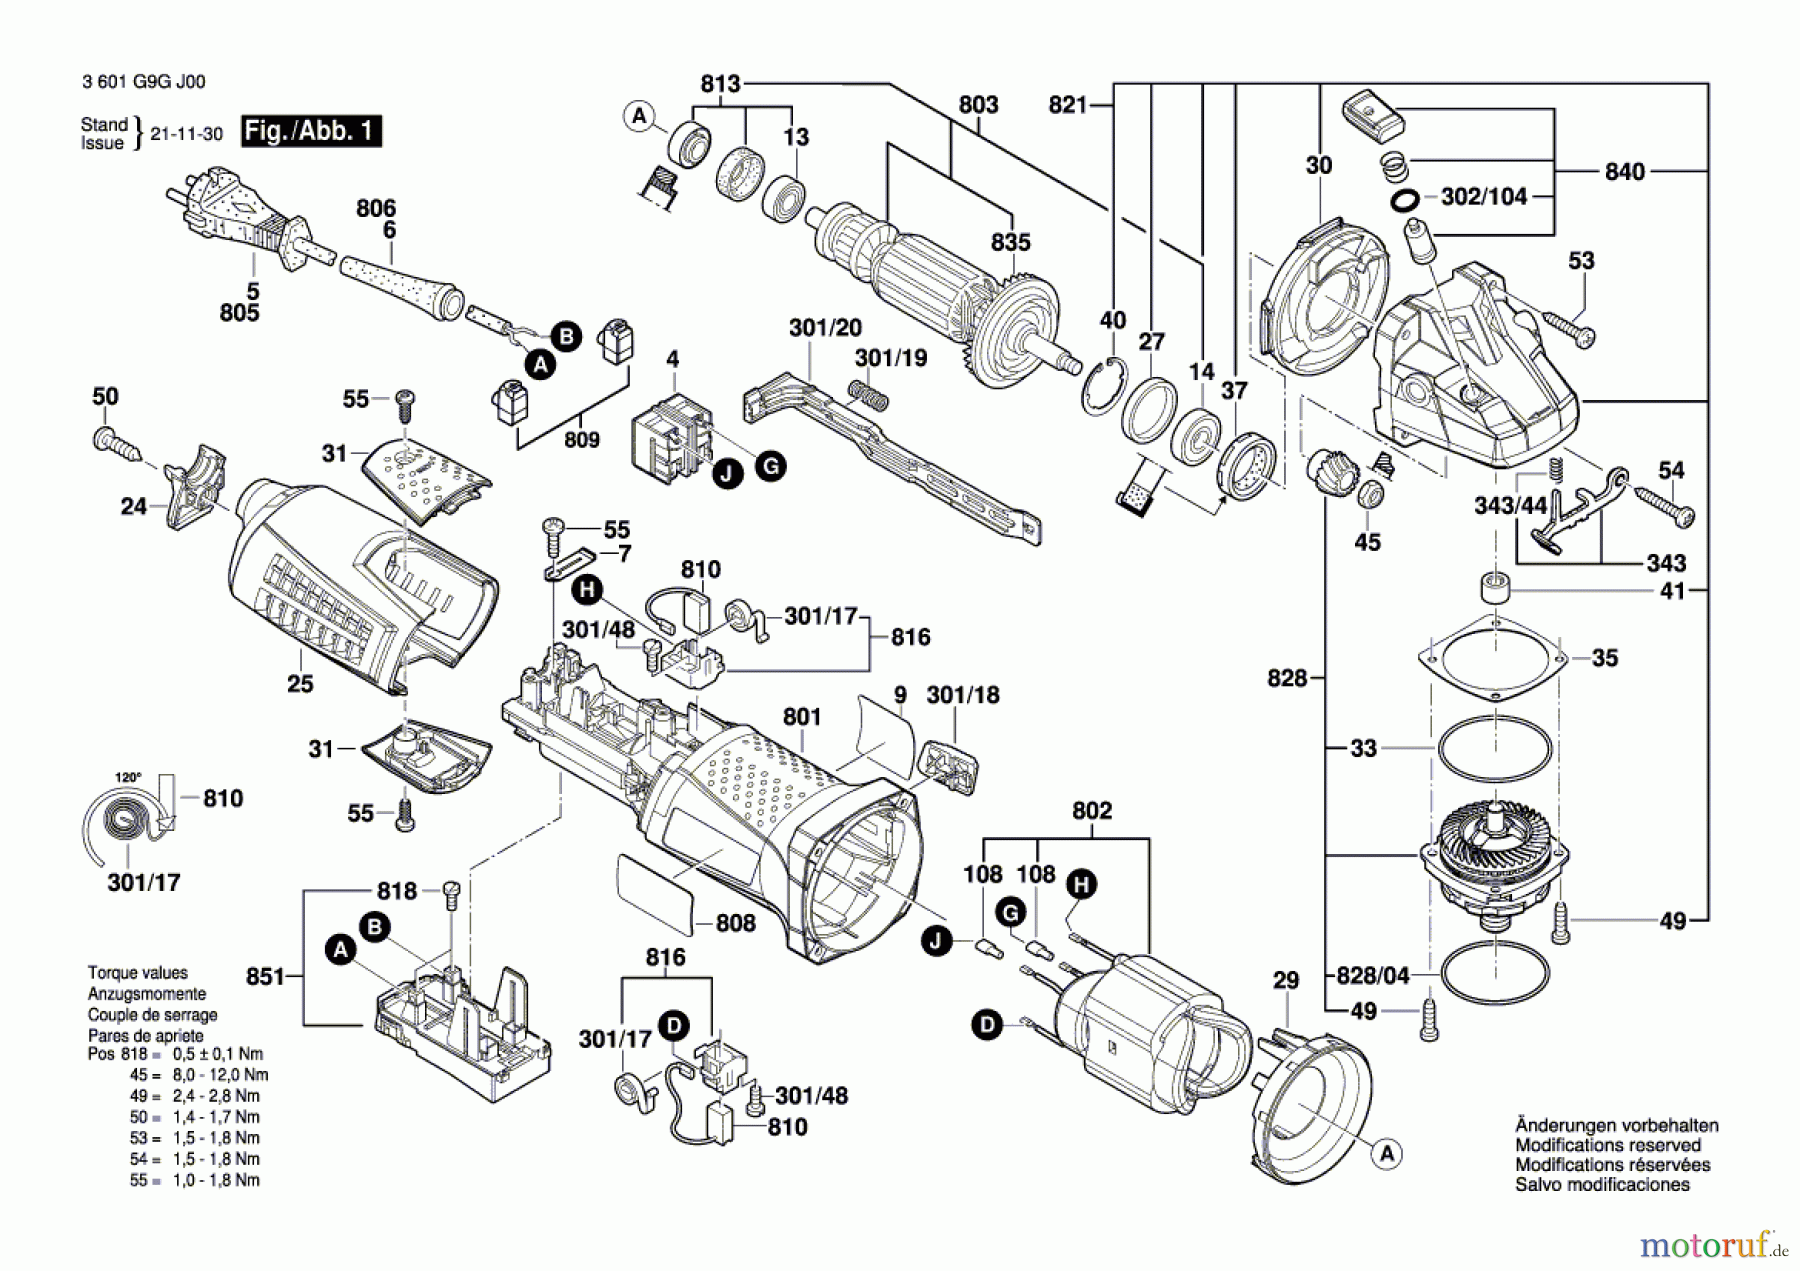  Bosch Werkzeug Winkelschleifer CG 17-125 (Fein) Seite 1